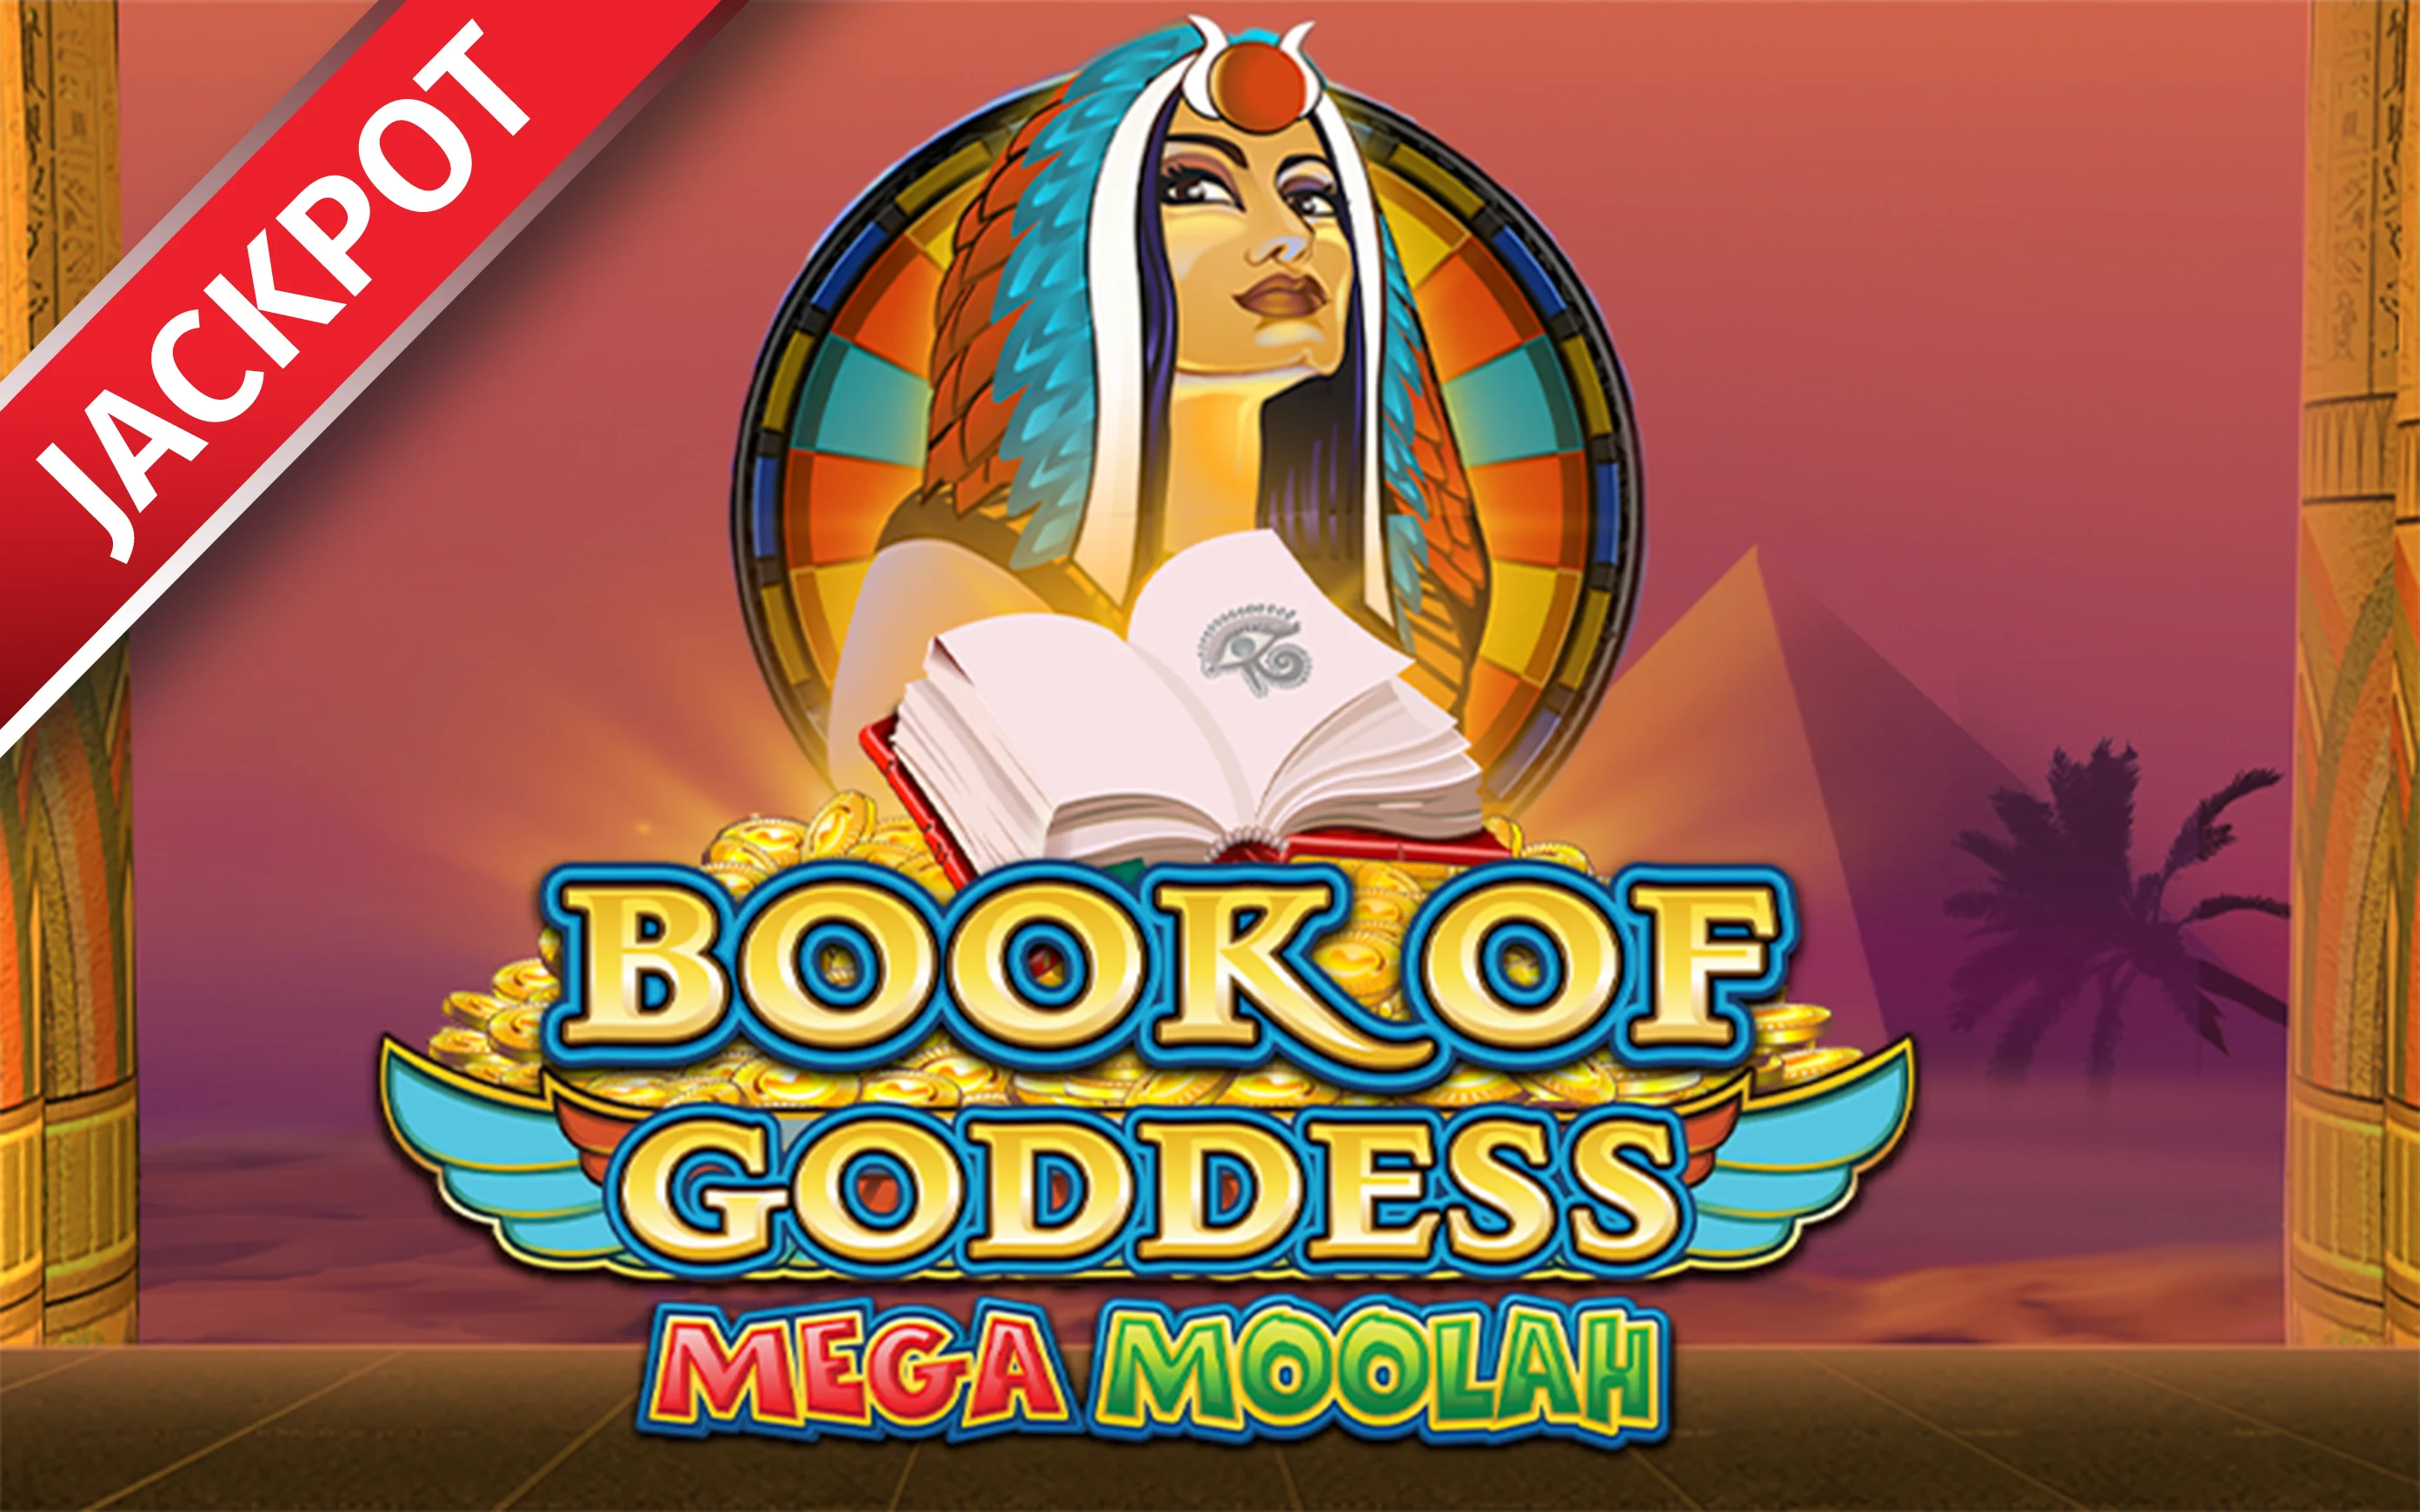 Play Book of Goddess Mega Moolah on Starcasino.be online casino